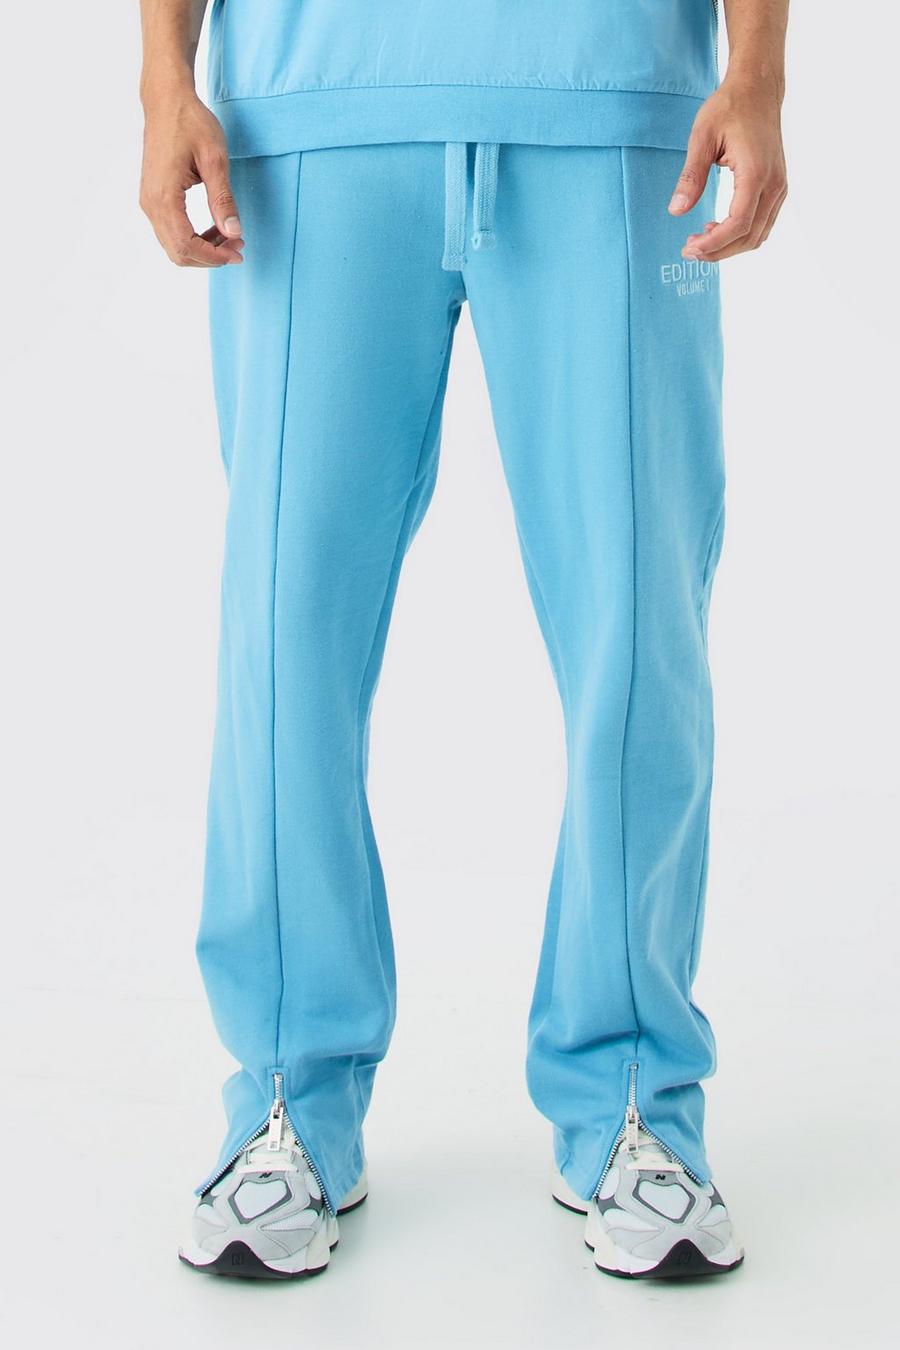 Pantalón deportivo holgado grueso con abertura en el bajo de EDITION, Blue